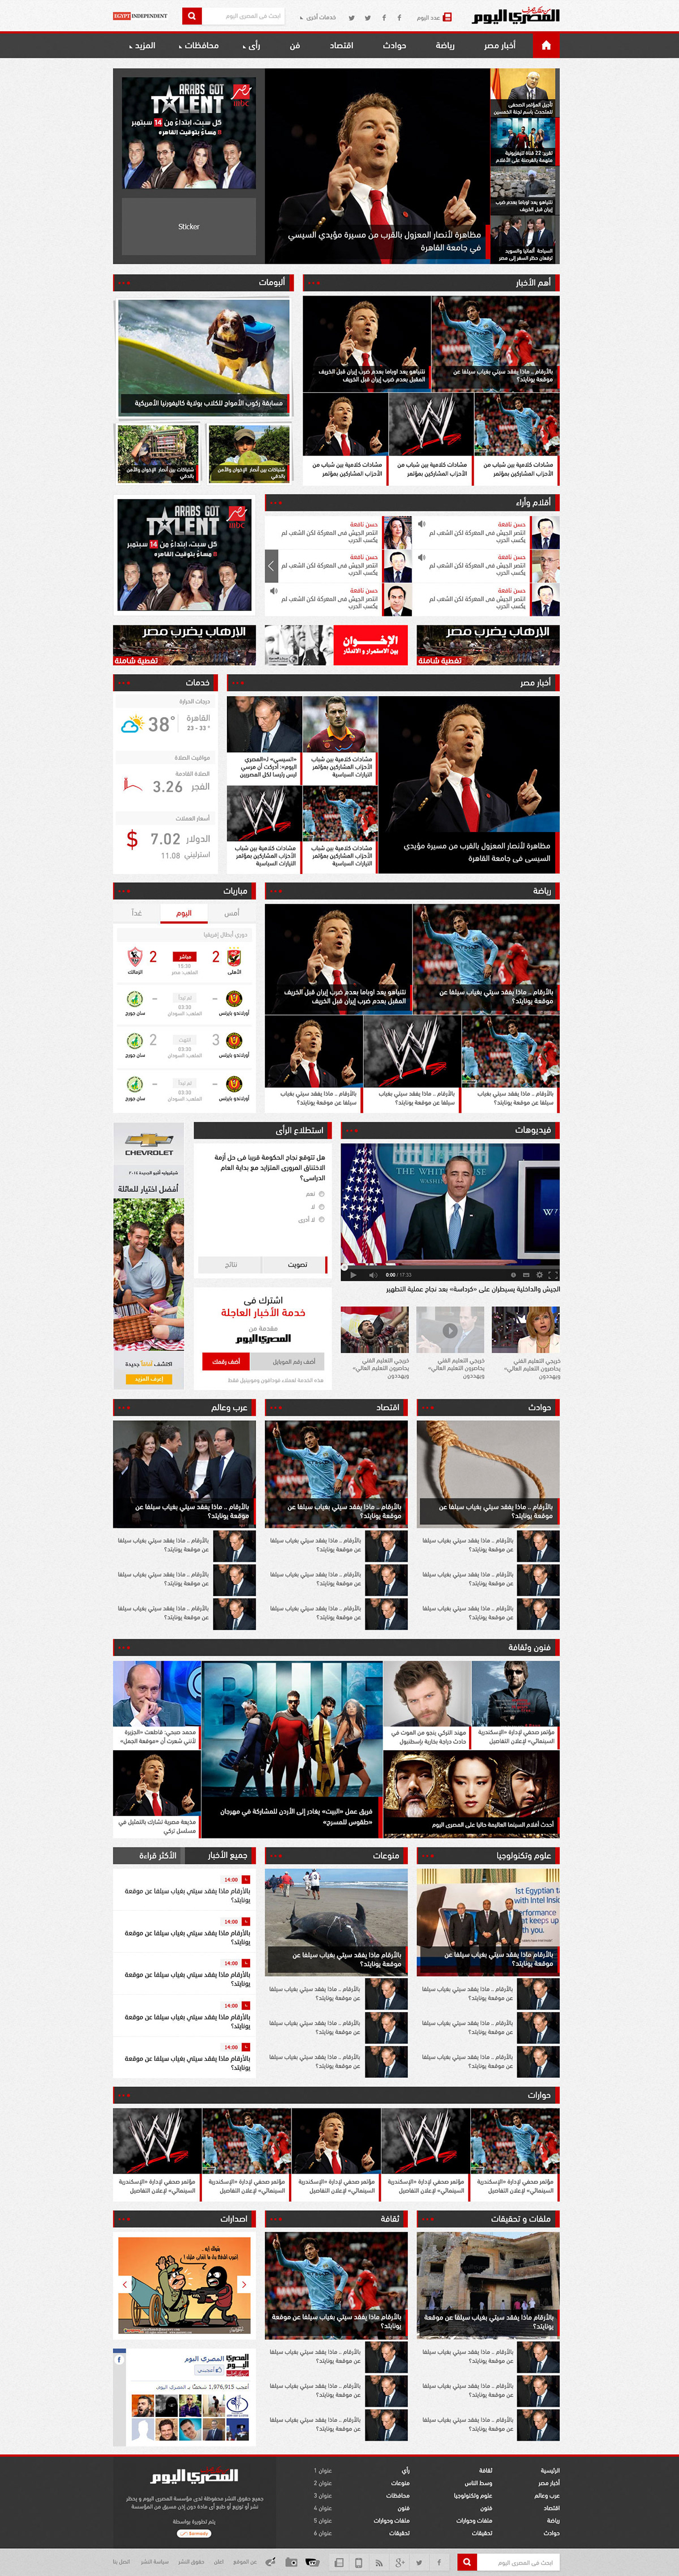 Webdesign news portals Web content